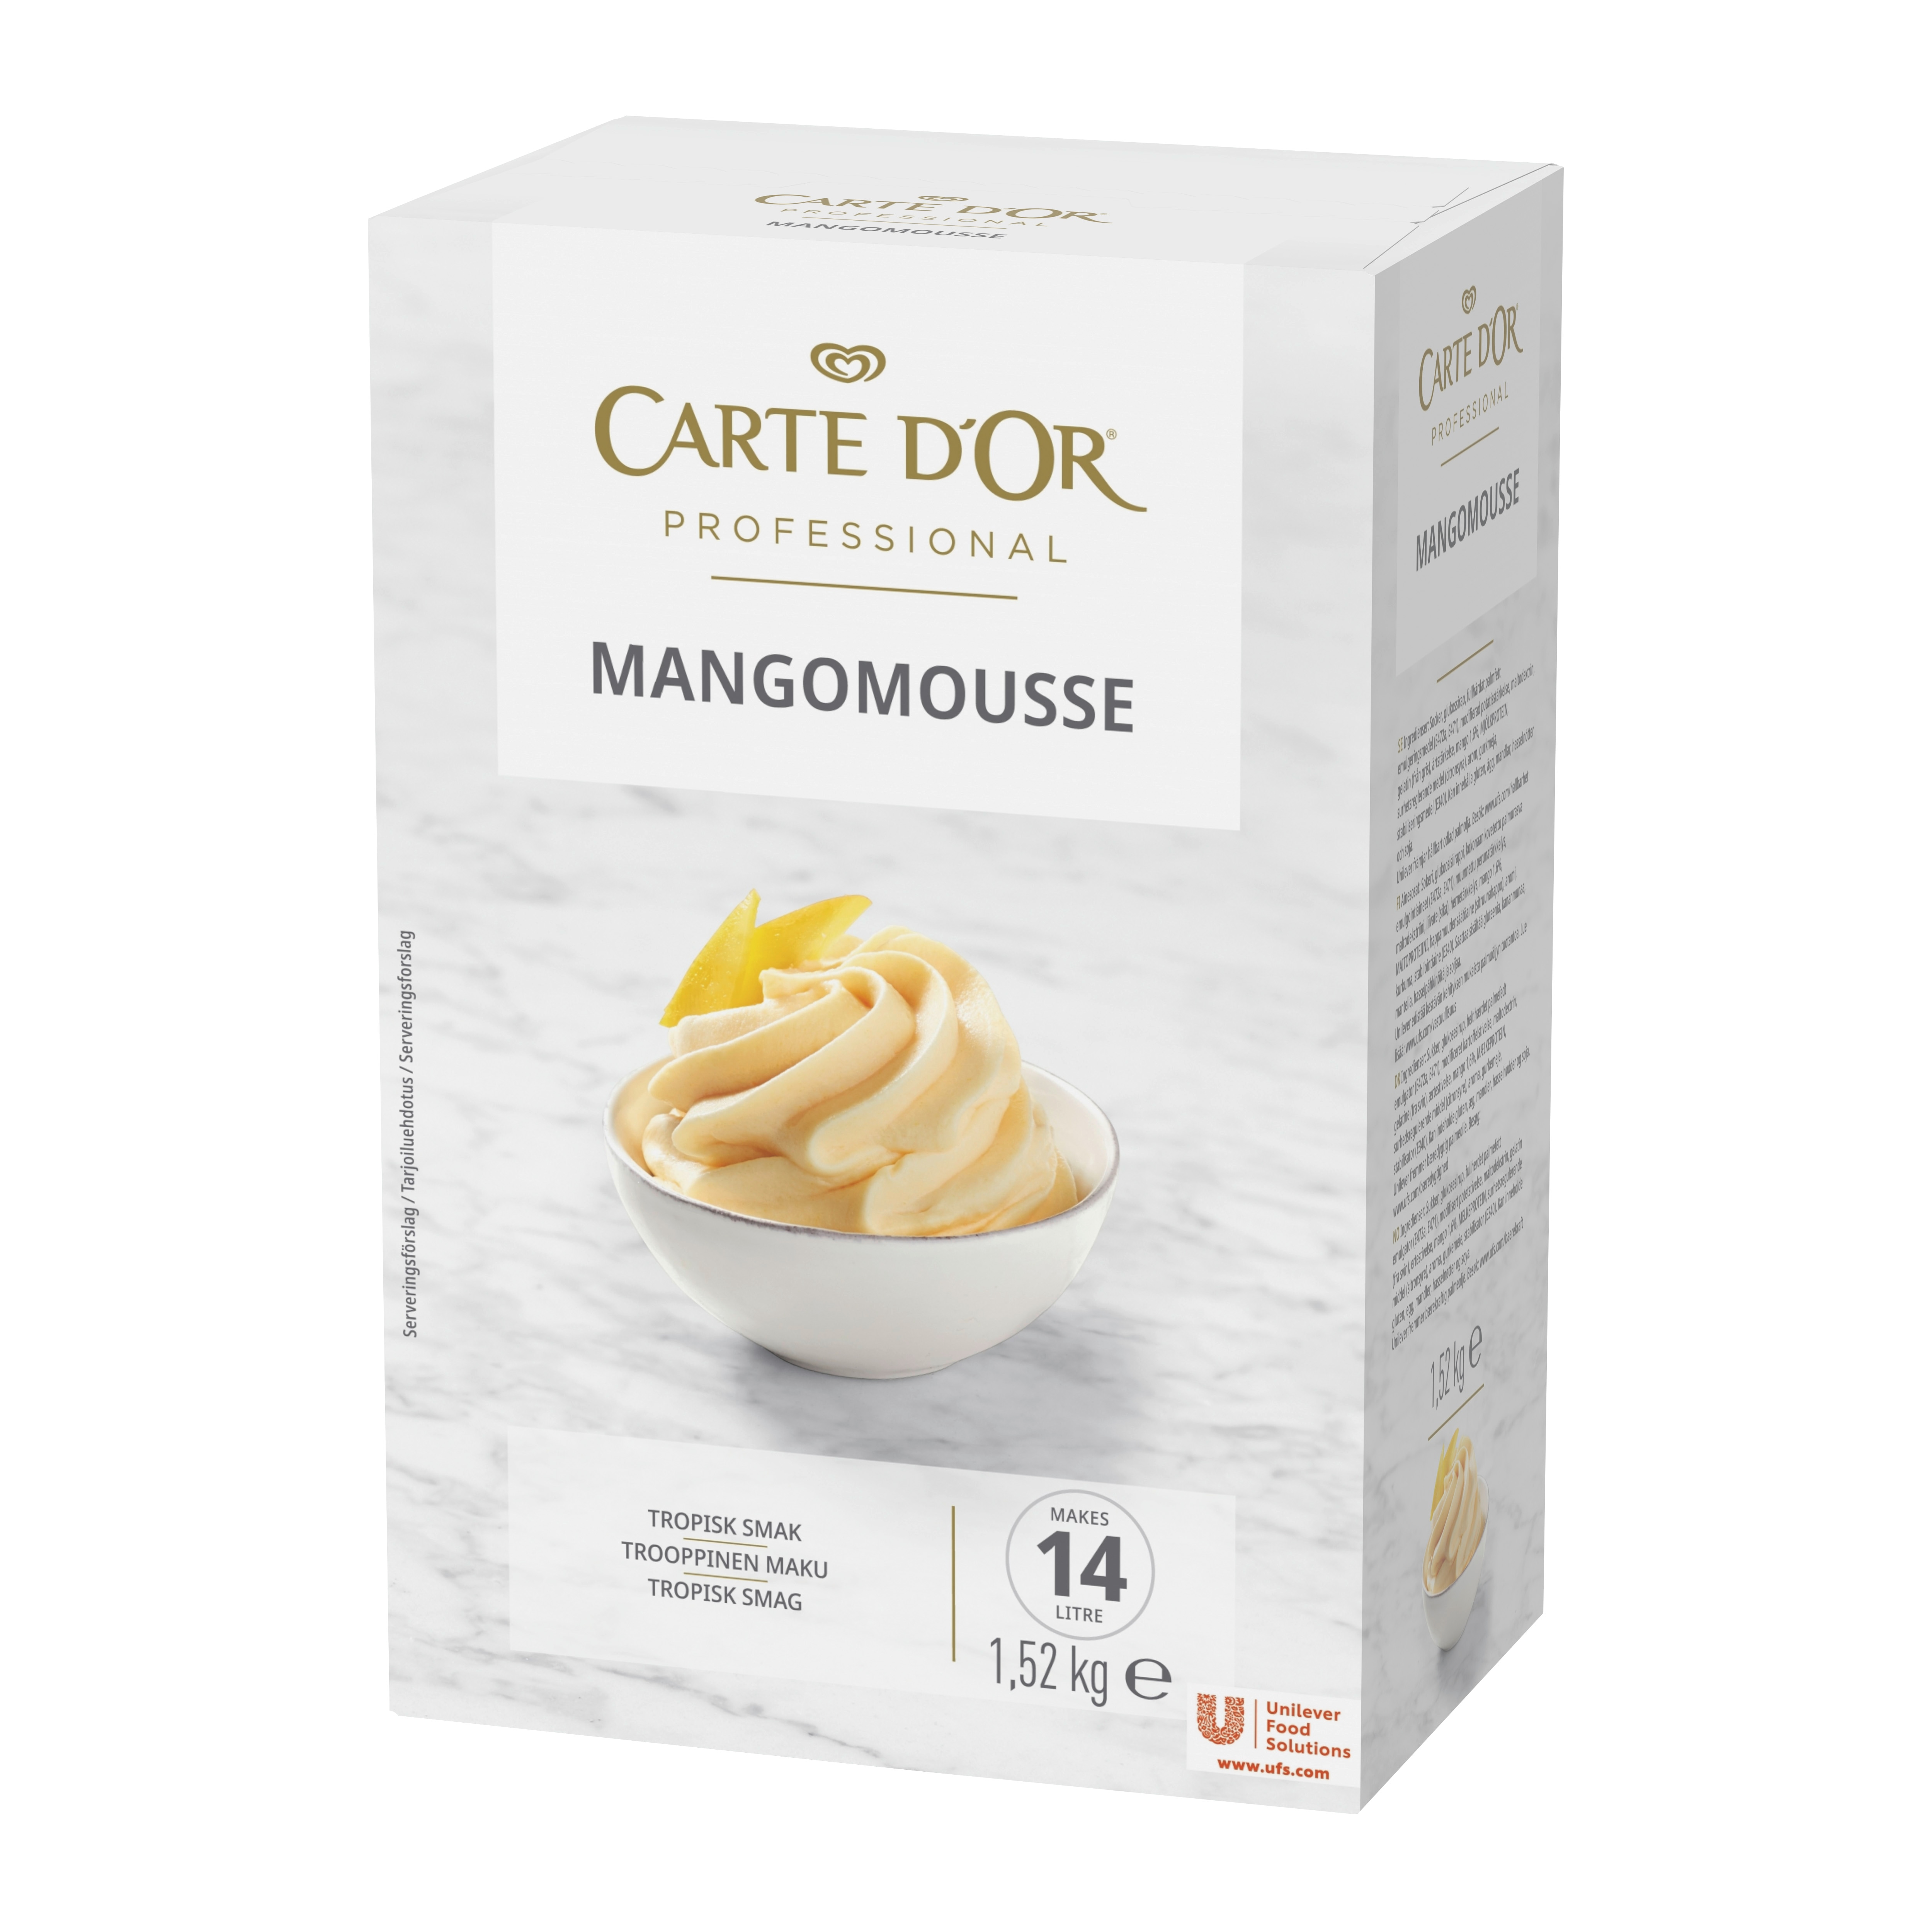 CARTE D'OR Mangomousse 1 x 1,52 kg - 